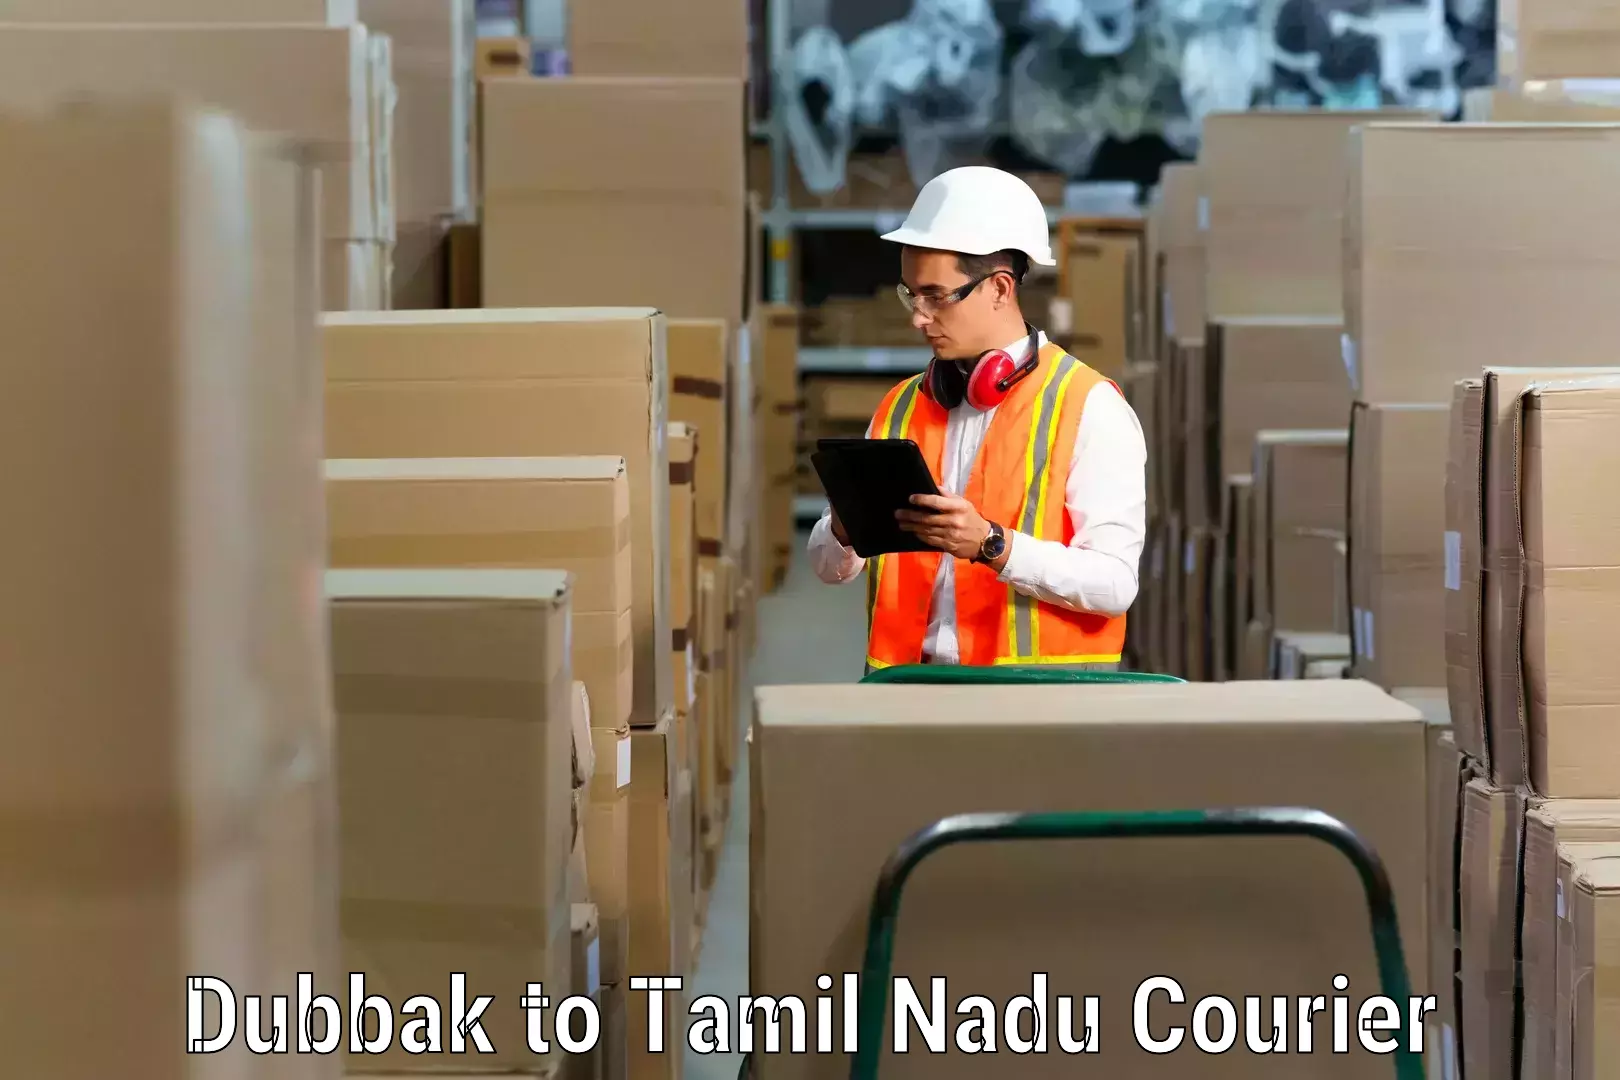 Expert packing and moving Dubbak to Tirunelveli